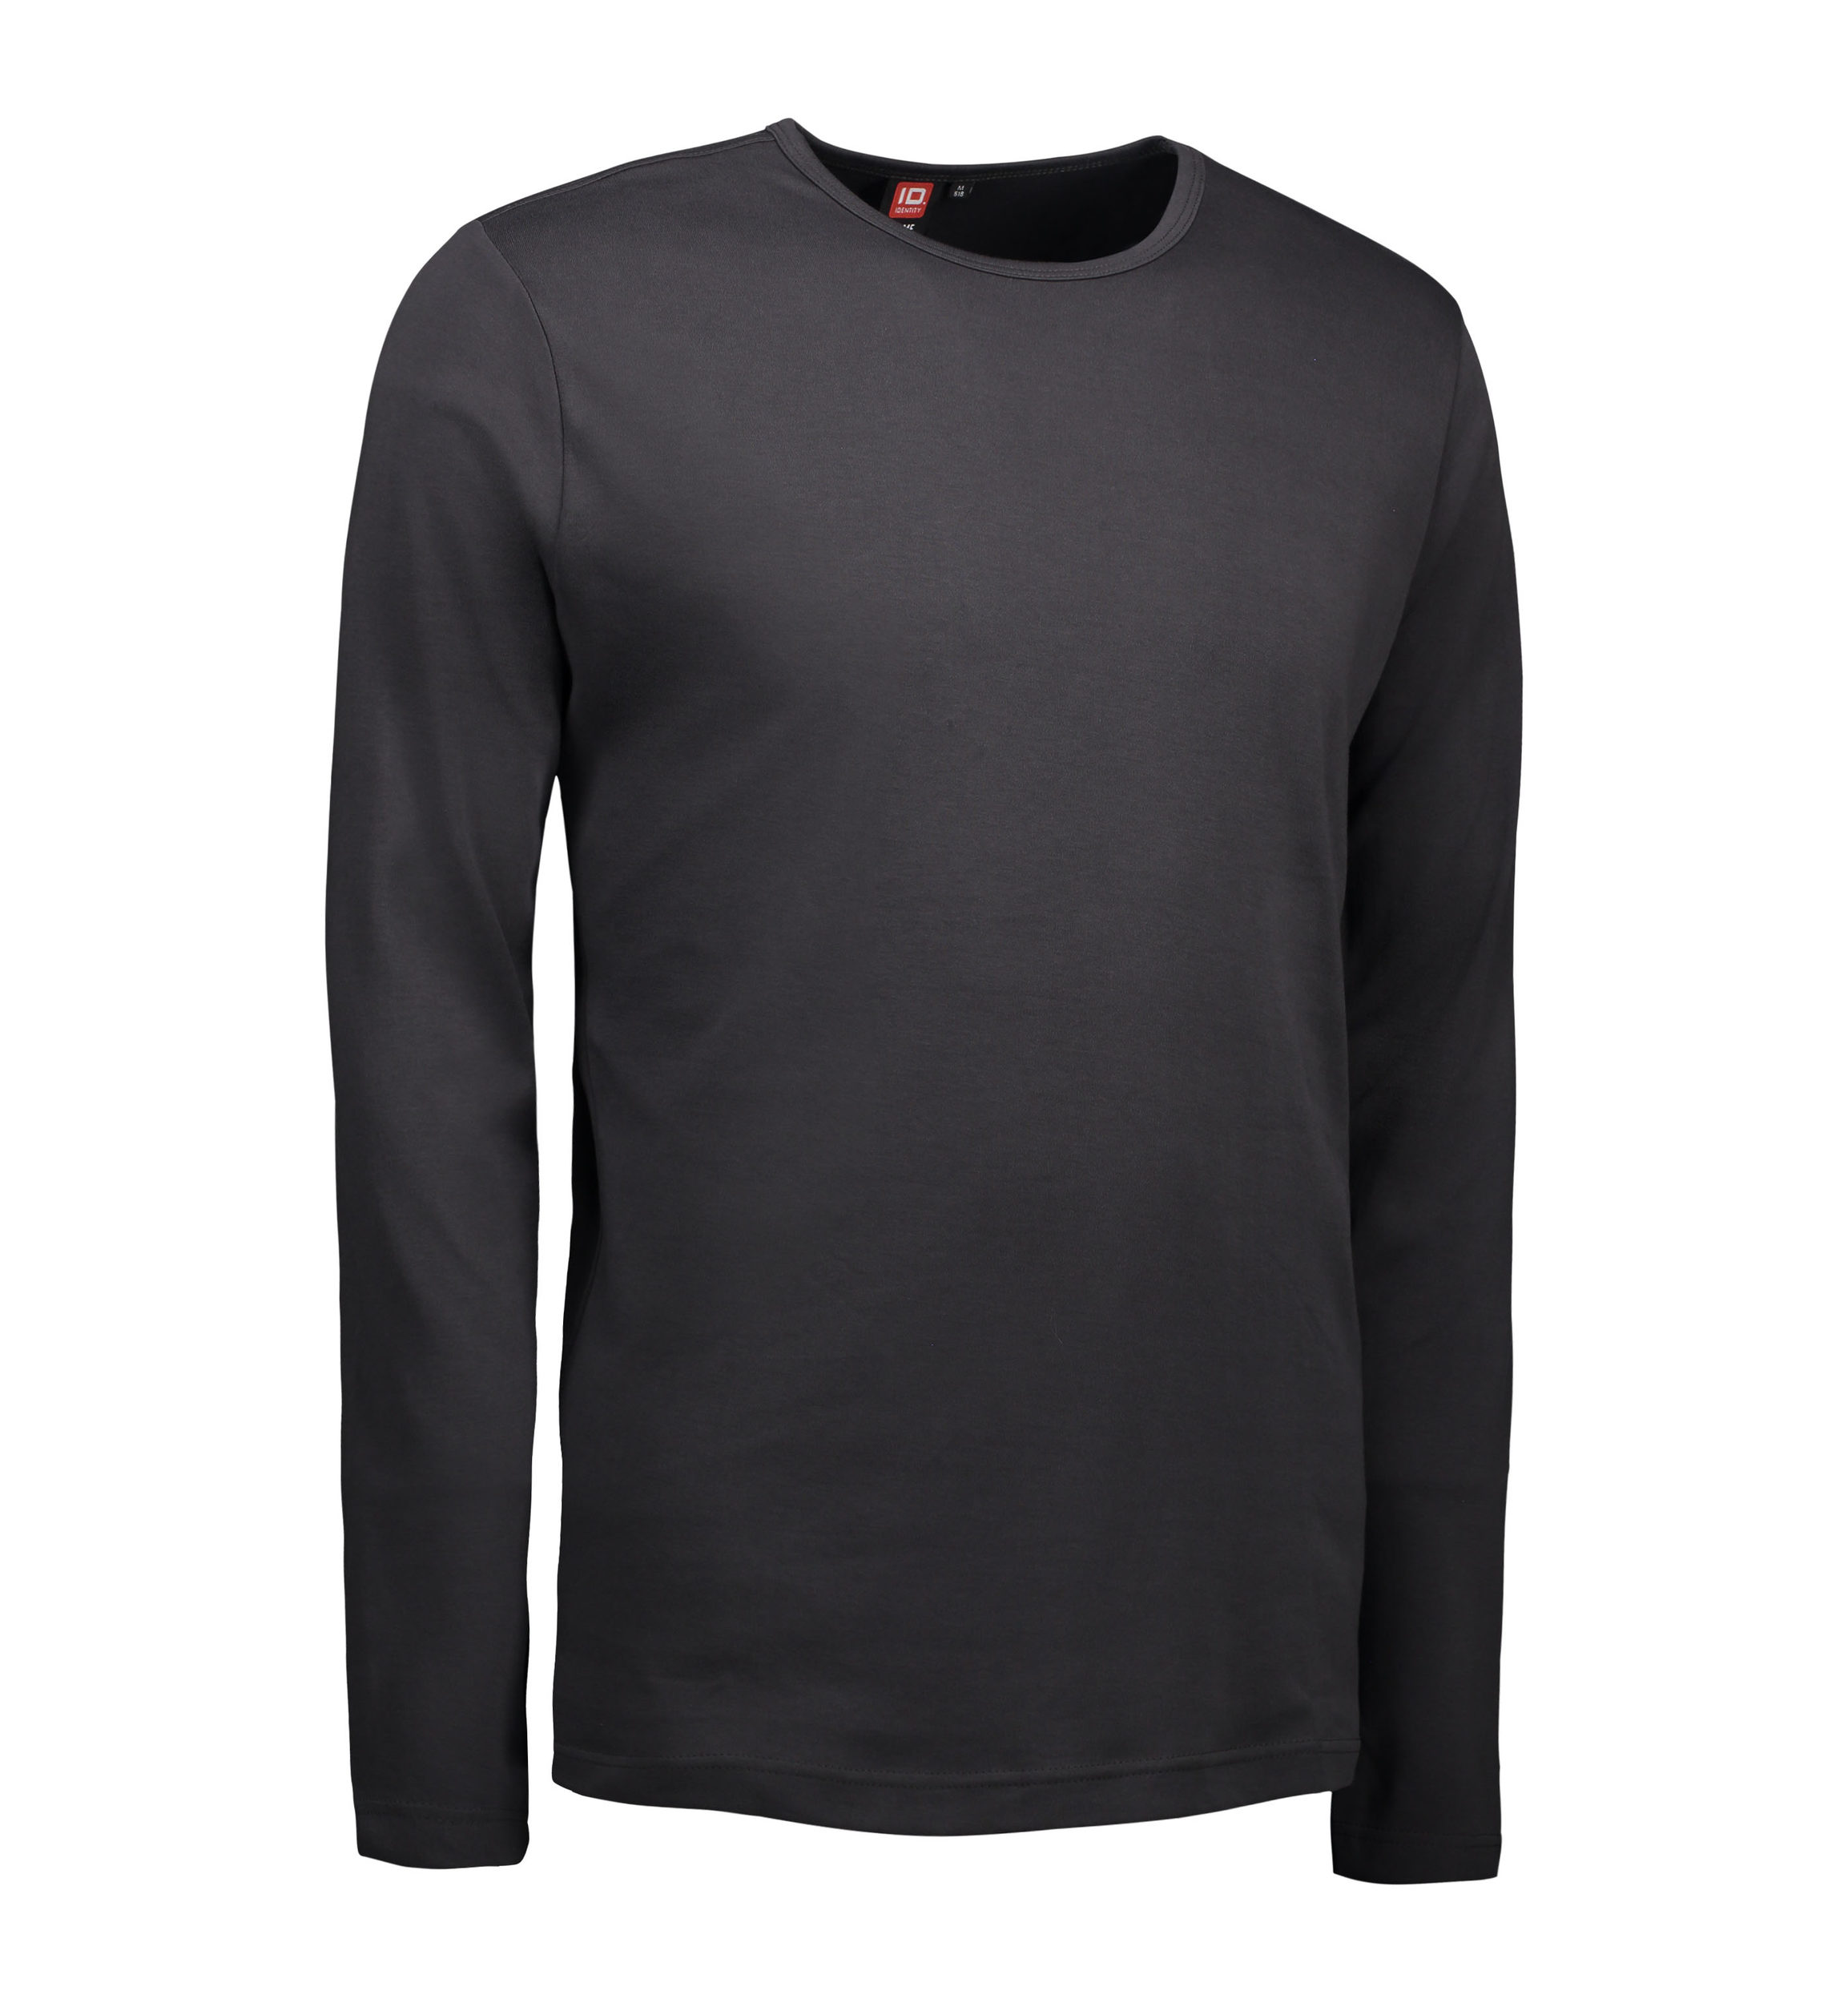 Billede af Koks grå langærmet t-shirt til mænd - 3XL hos Sygeplejebutikken.dk